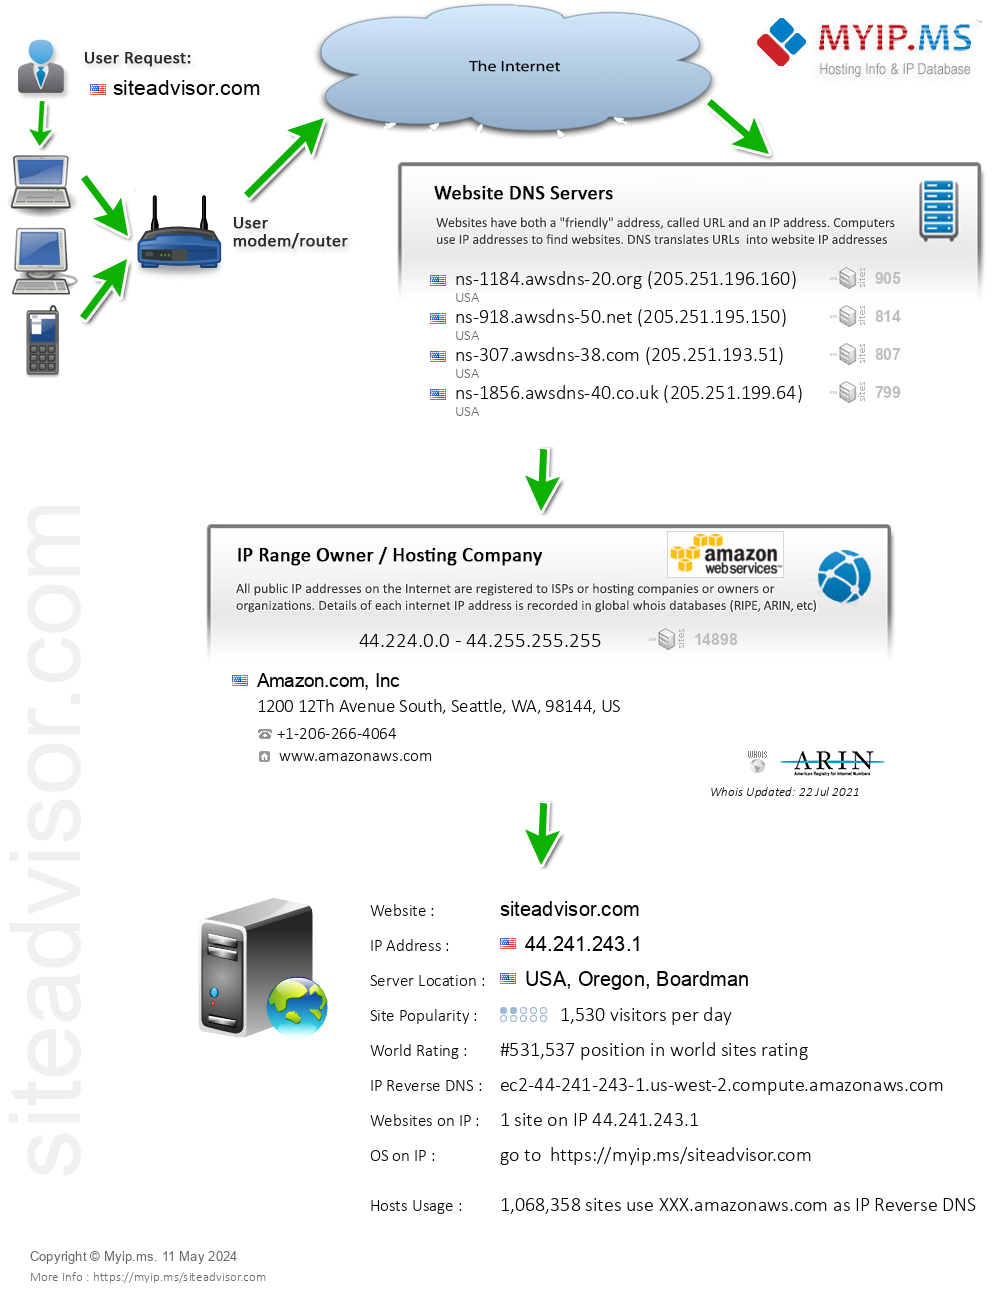 Siteadvisor.com - Website Hosting Visual IP Diagram